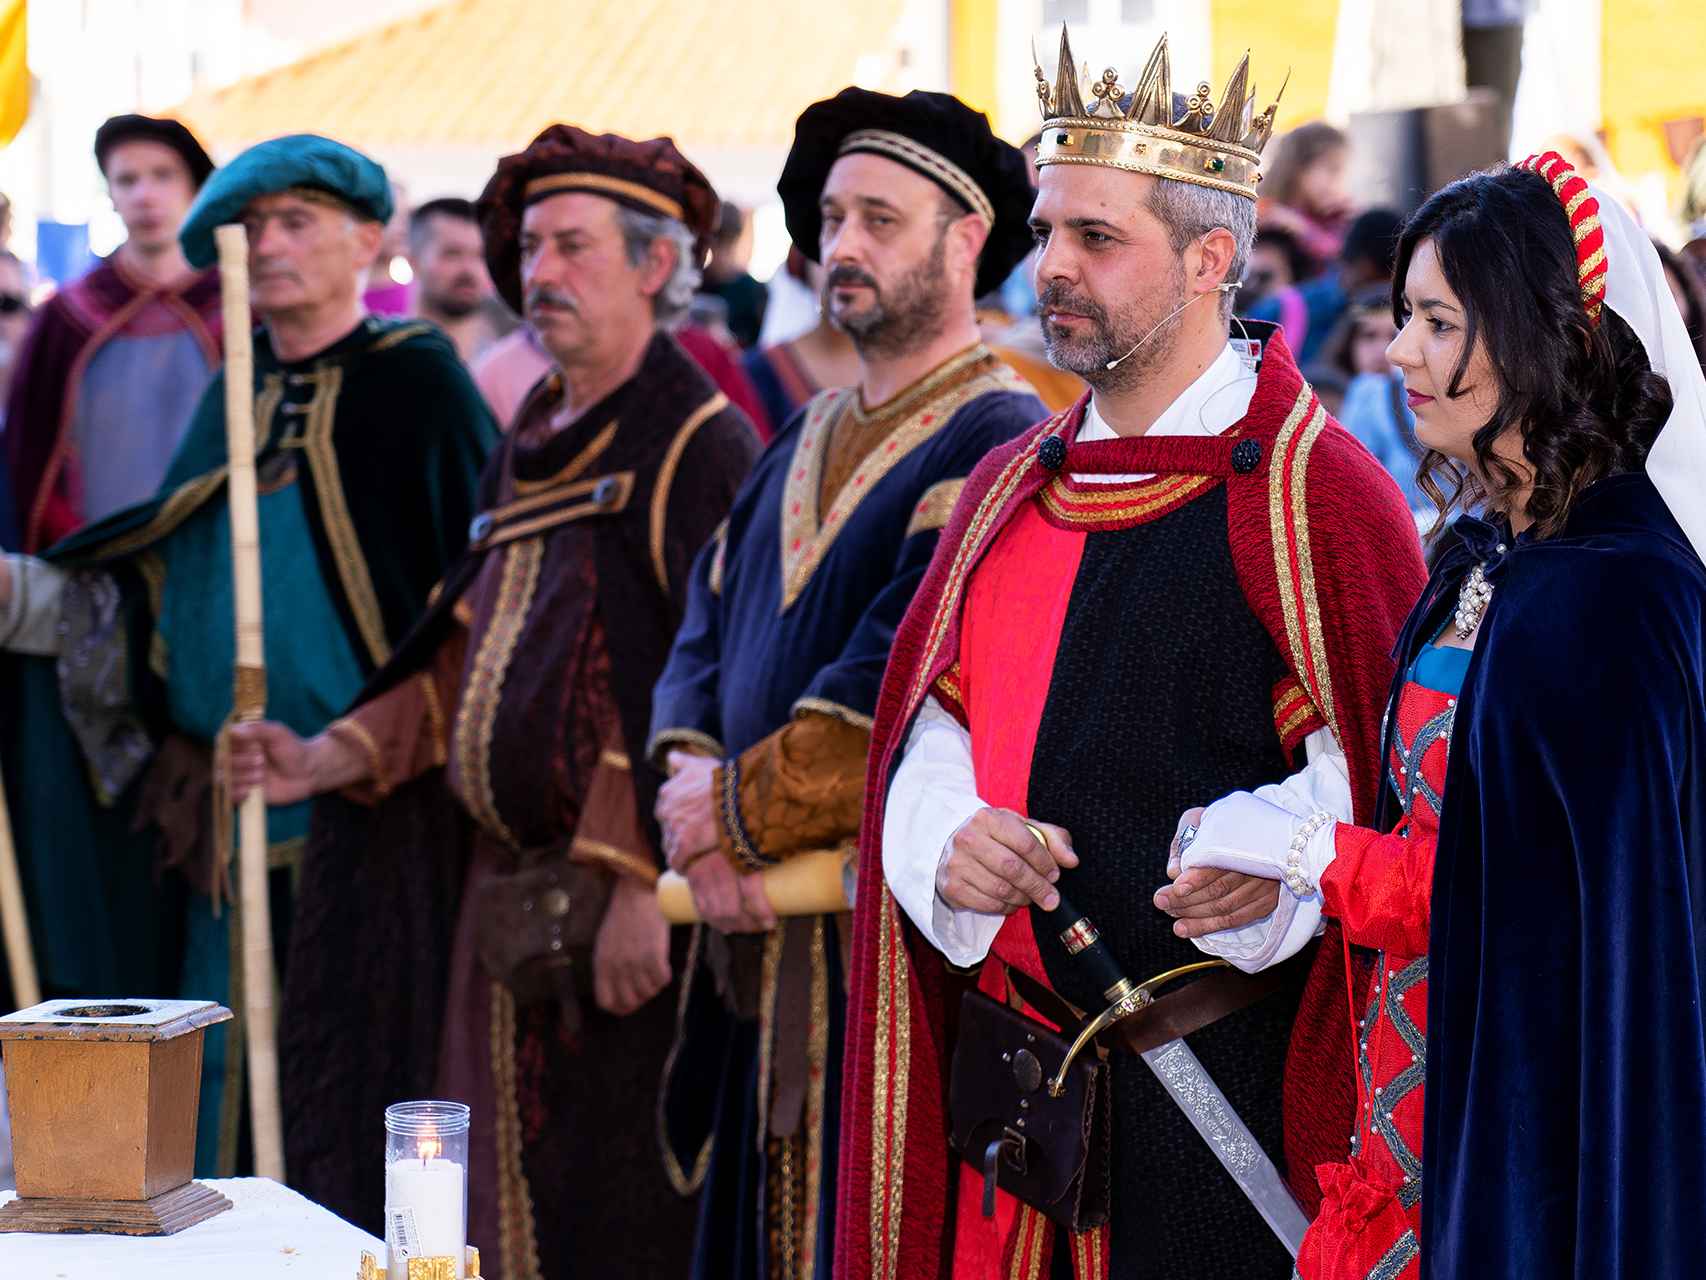 El rey D. Dinis, como protagonista, retrotrae la historia a la Edad Media